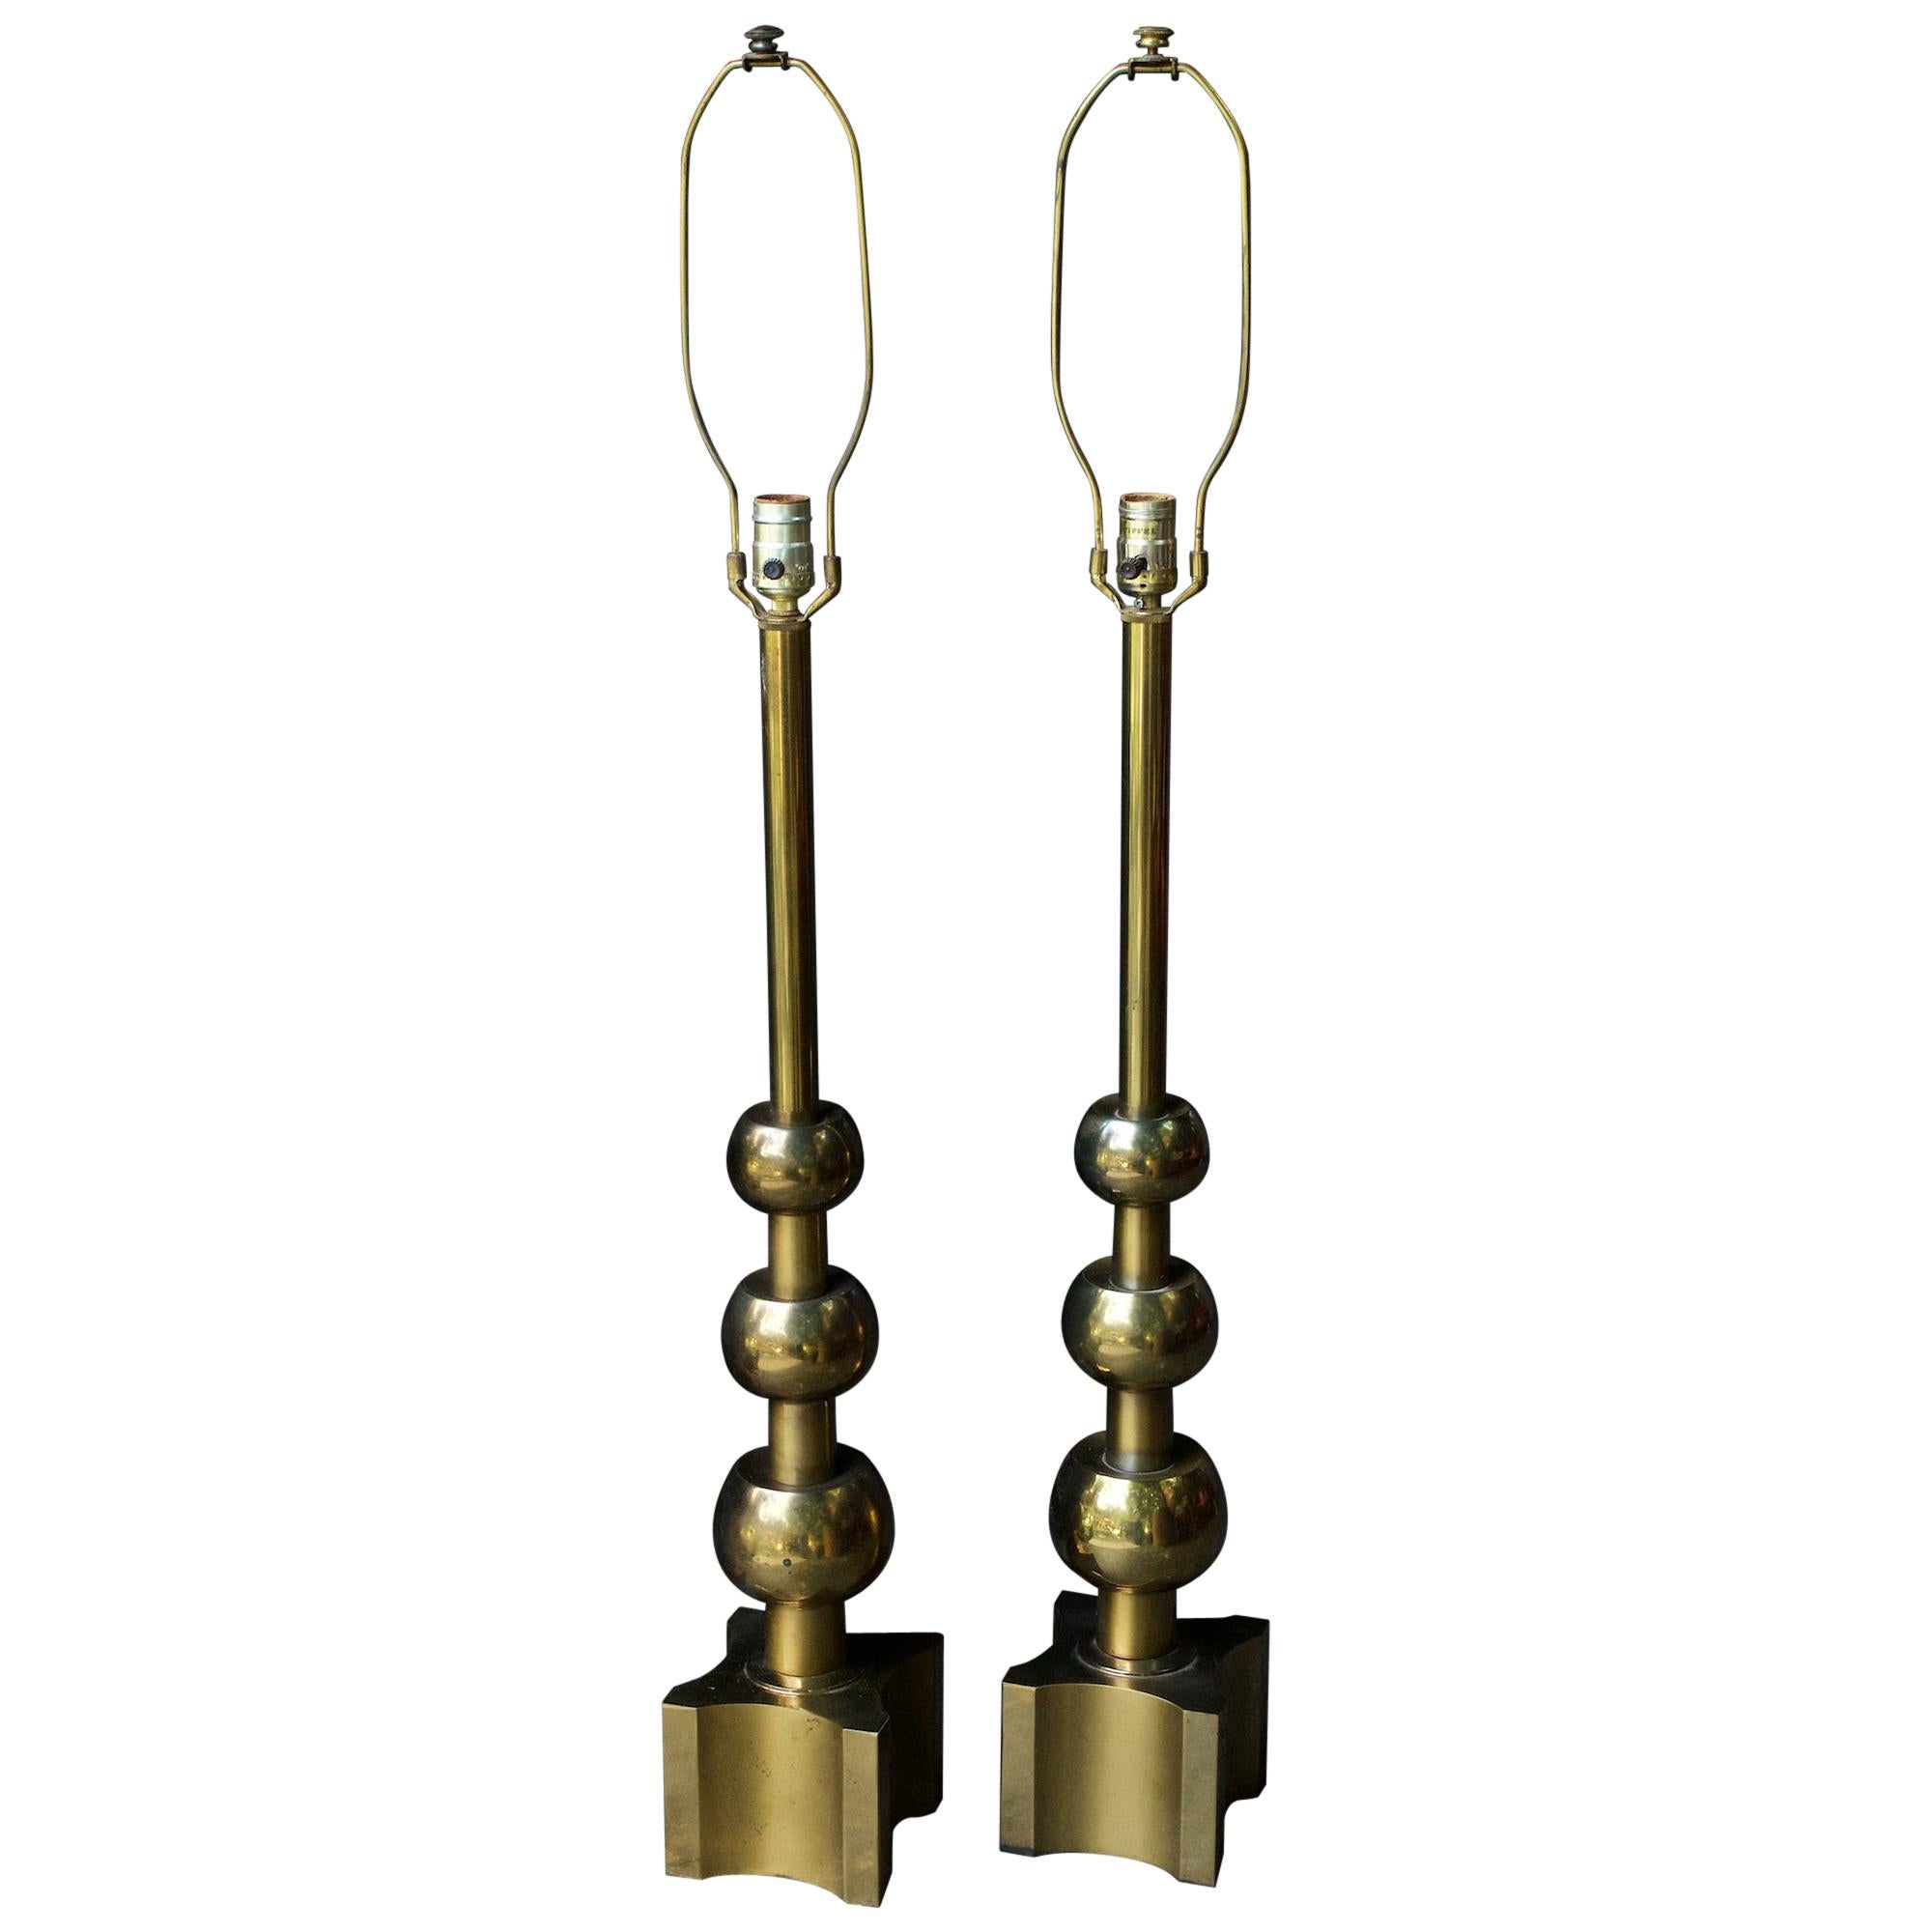 Abgestufte Kugel-Tischlampen von Tommi Parzinger Stiffel aus Messing, Maximalistische Mid-Century-Tischlampen